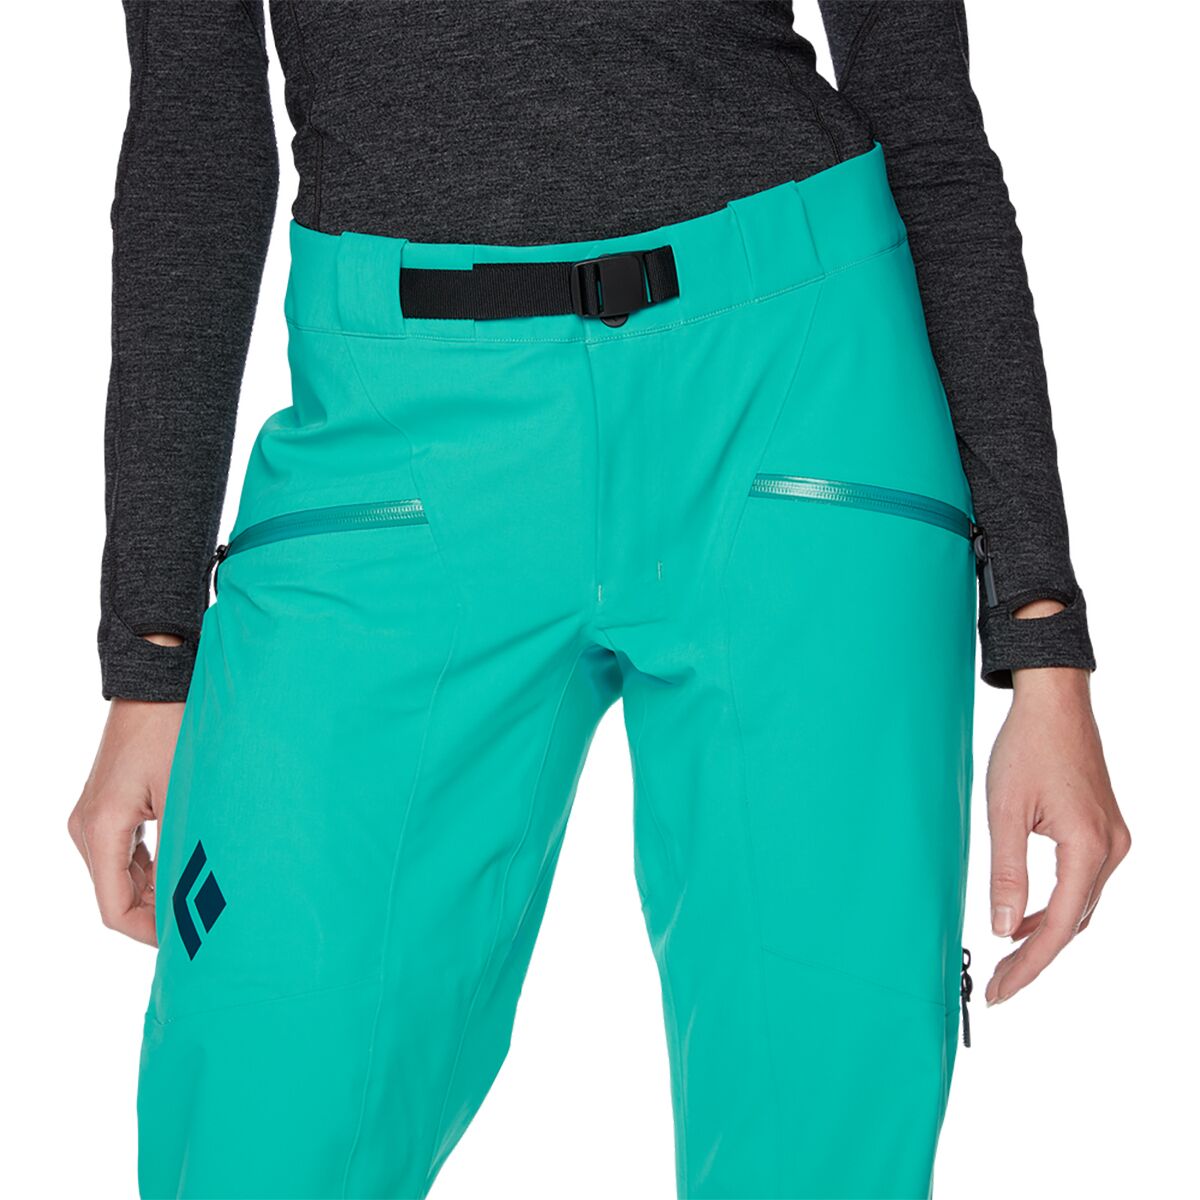 Black Diamond Recon Stretch Ski Pants - Ski trousers Women's, Buy online